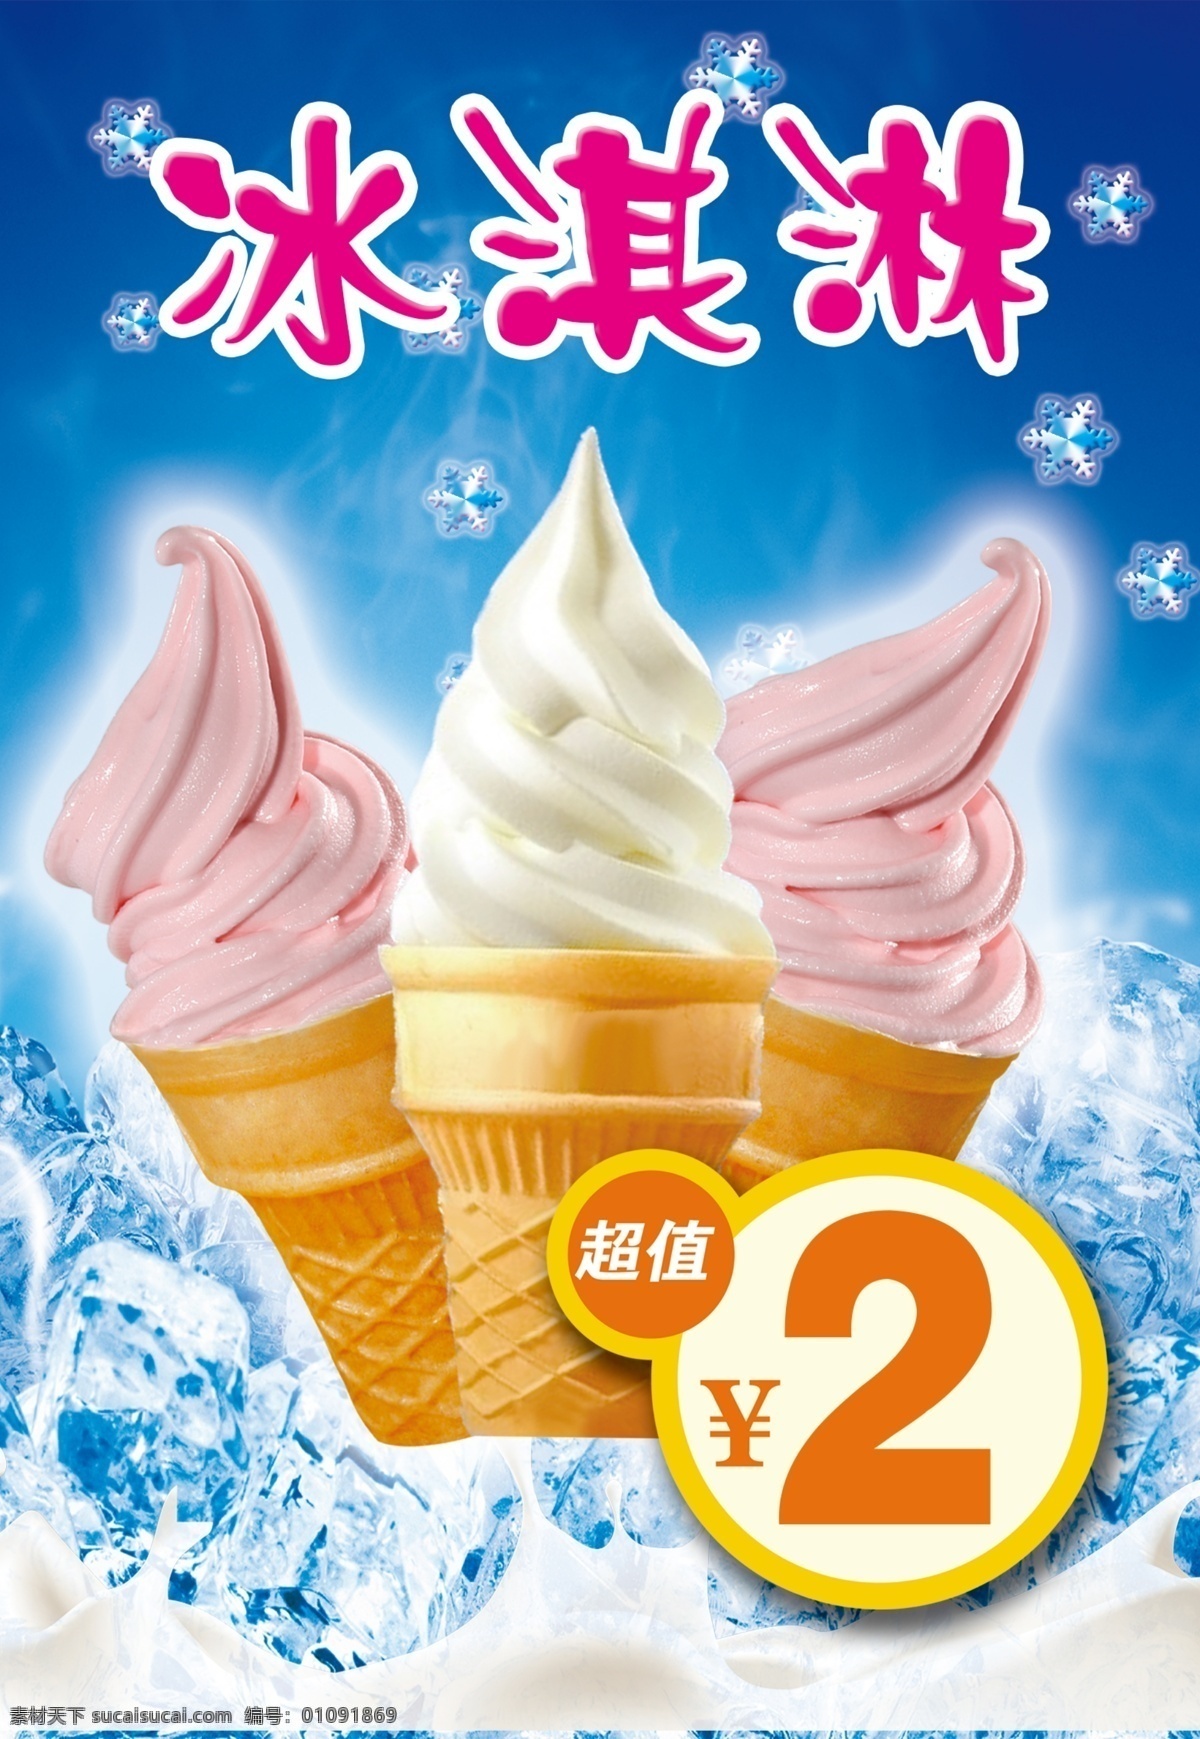 冰激凌 冰淇淋 冰块 夏季海报 雪花 蓝色背景 牛奶 价签 冰激凌素材 海报模板 分层 海报